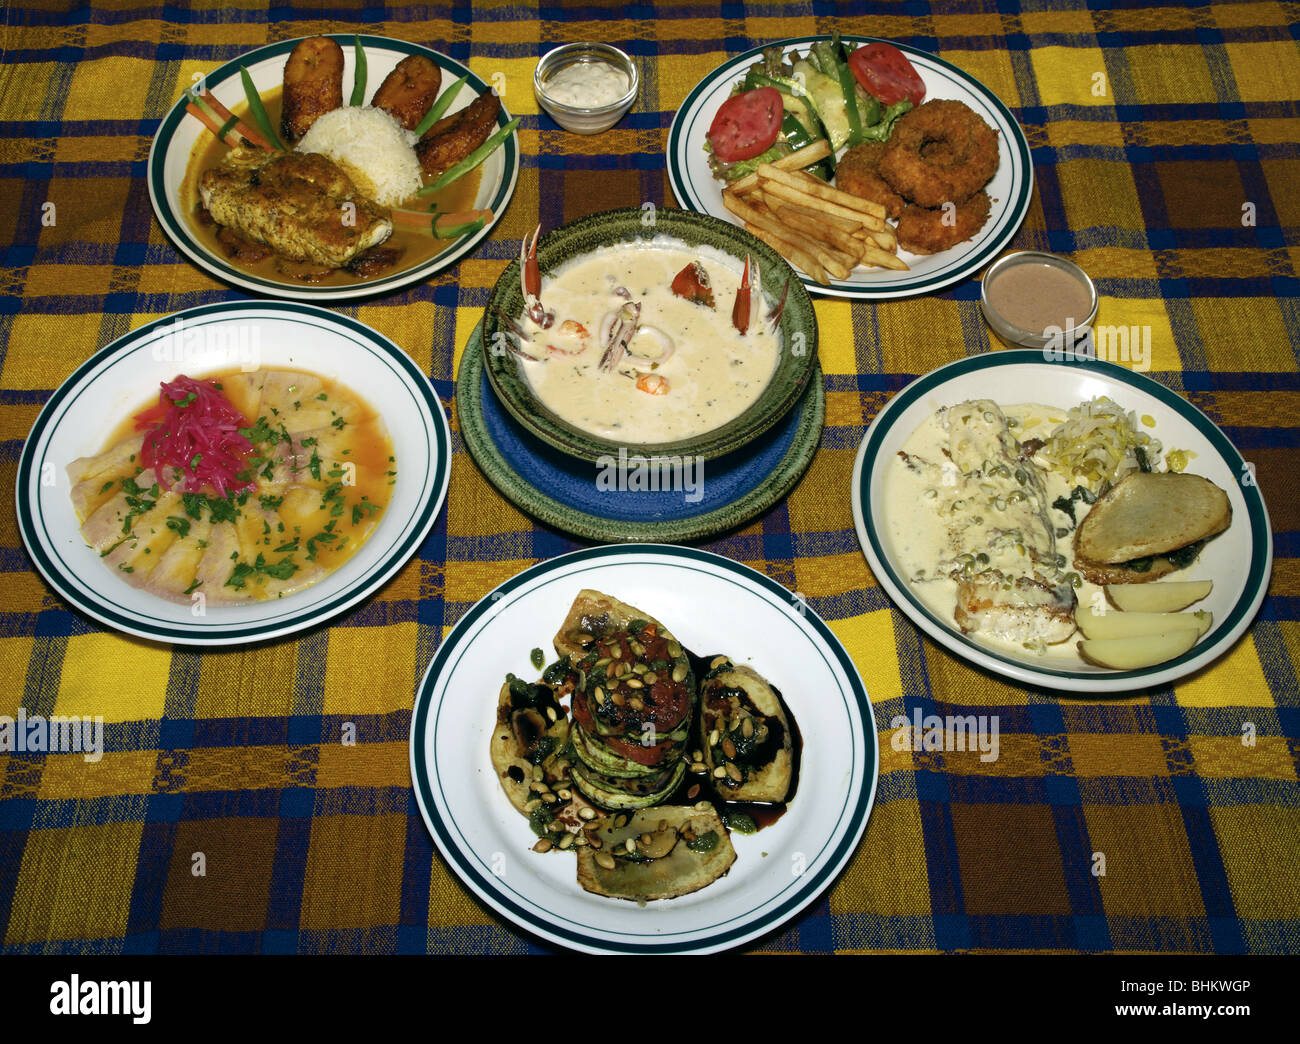 El Salvador. Salvadoran gastronomy. Stock Photo